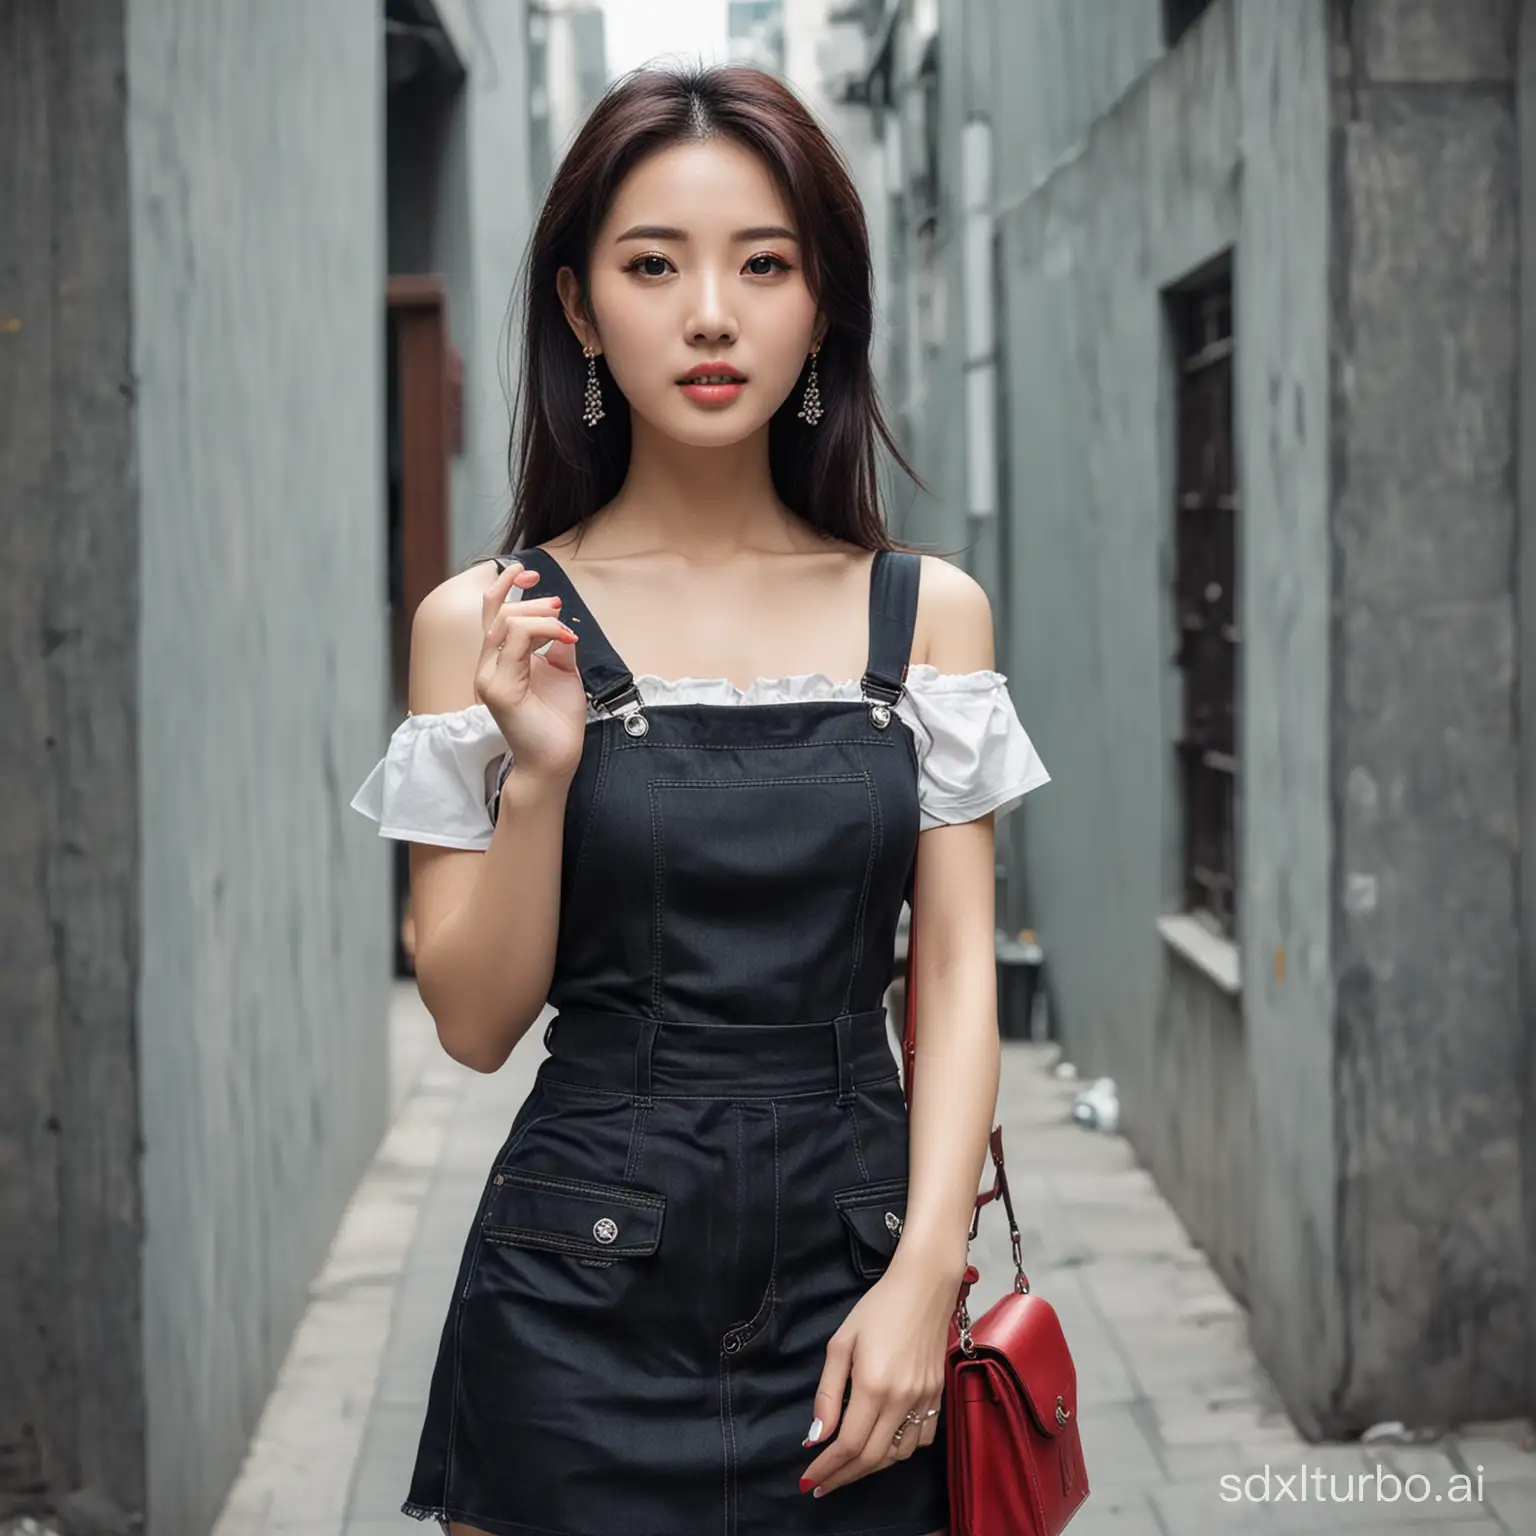 The stylish beauty of Chinese urban girls